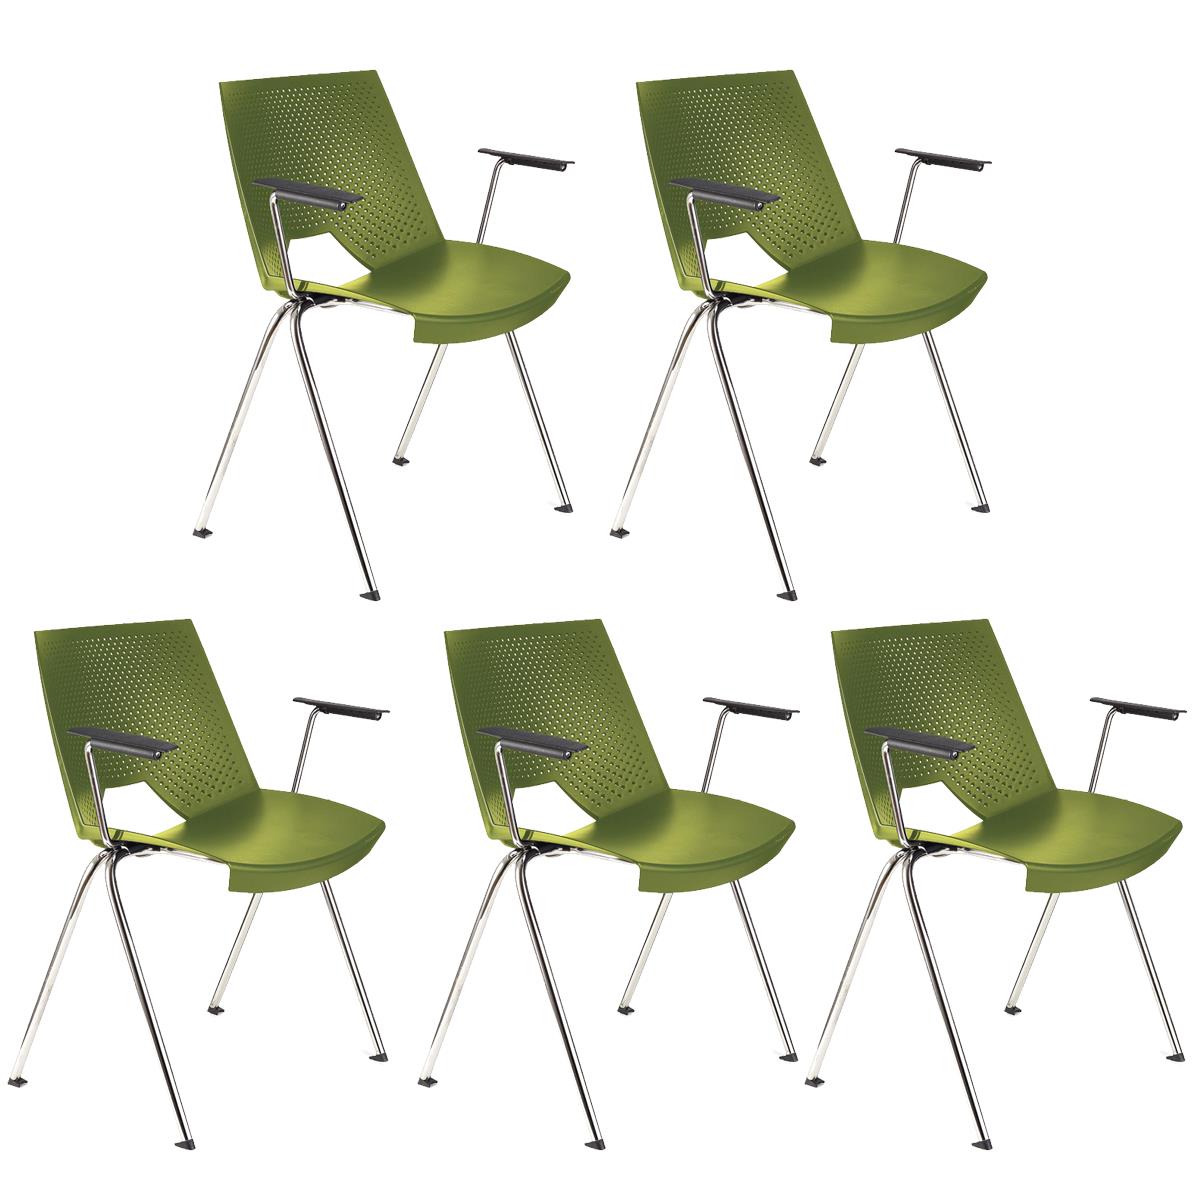 Lote 5 Cadeiras de Visita ENZO COM BRAÇOS, Confortável e Empilhável, Cor Verde